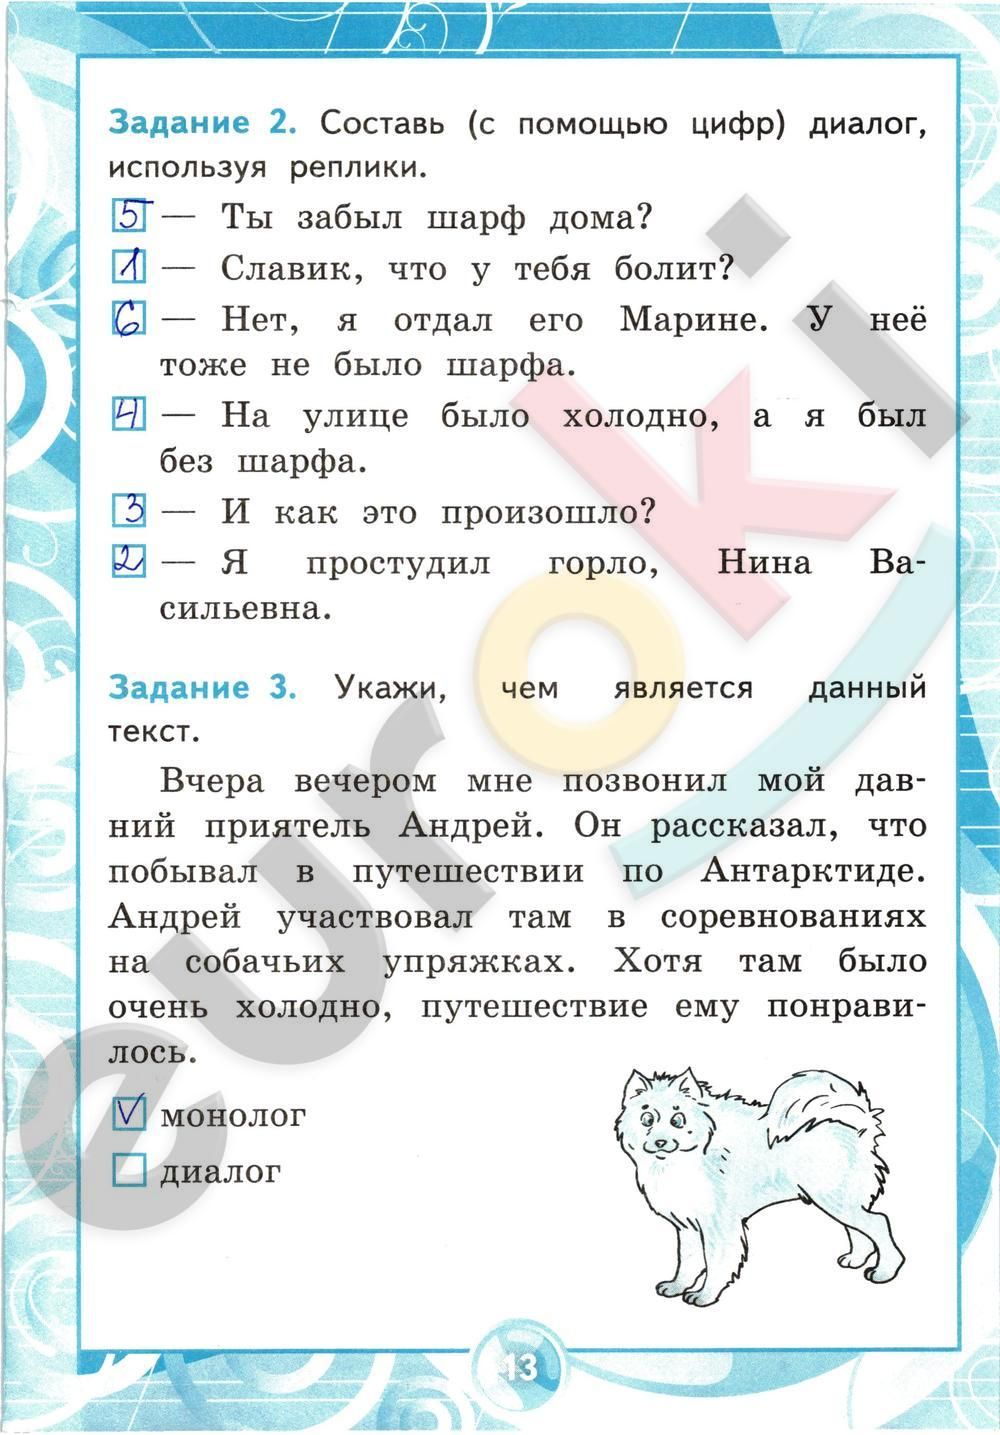 ГДЗ Русский язык 2 класс - стр. 13